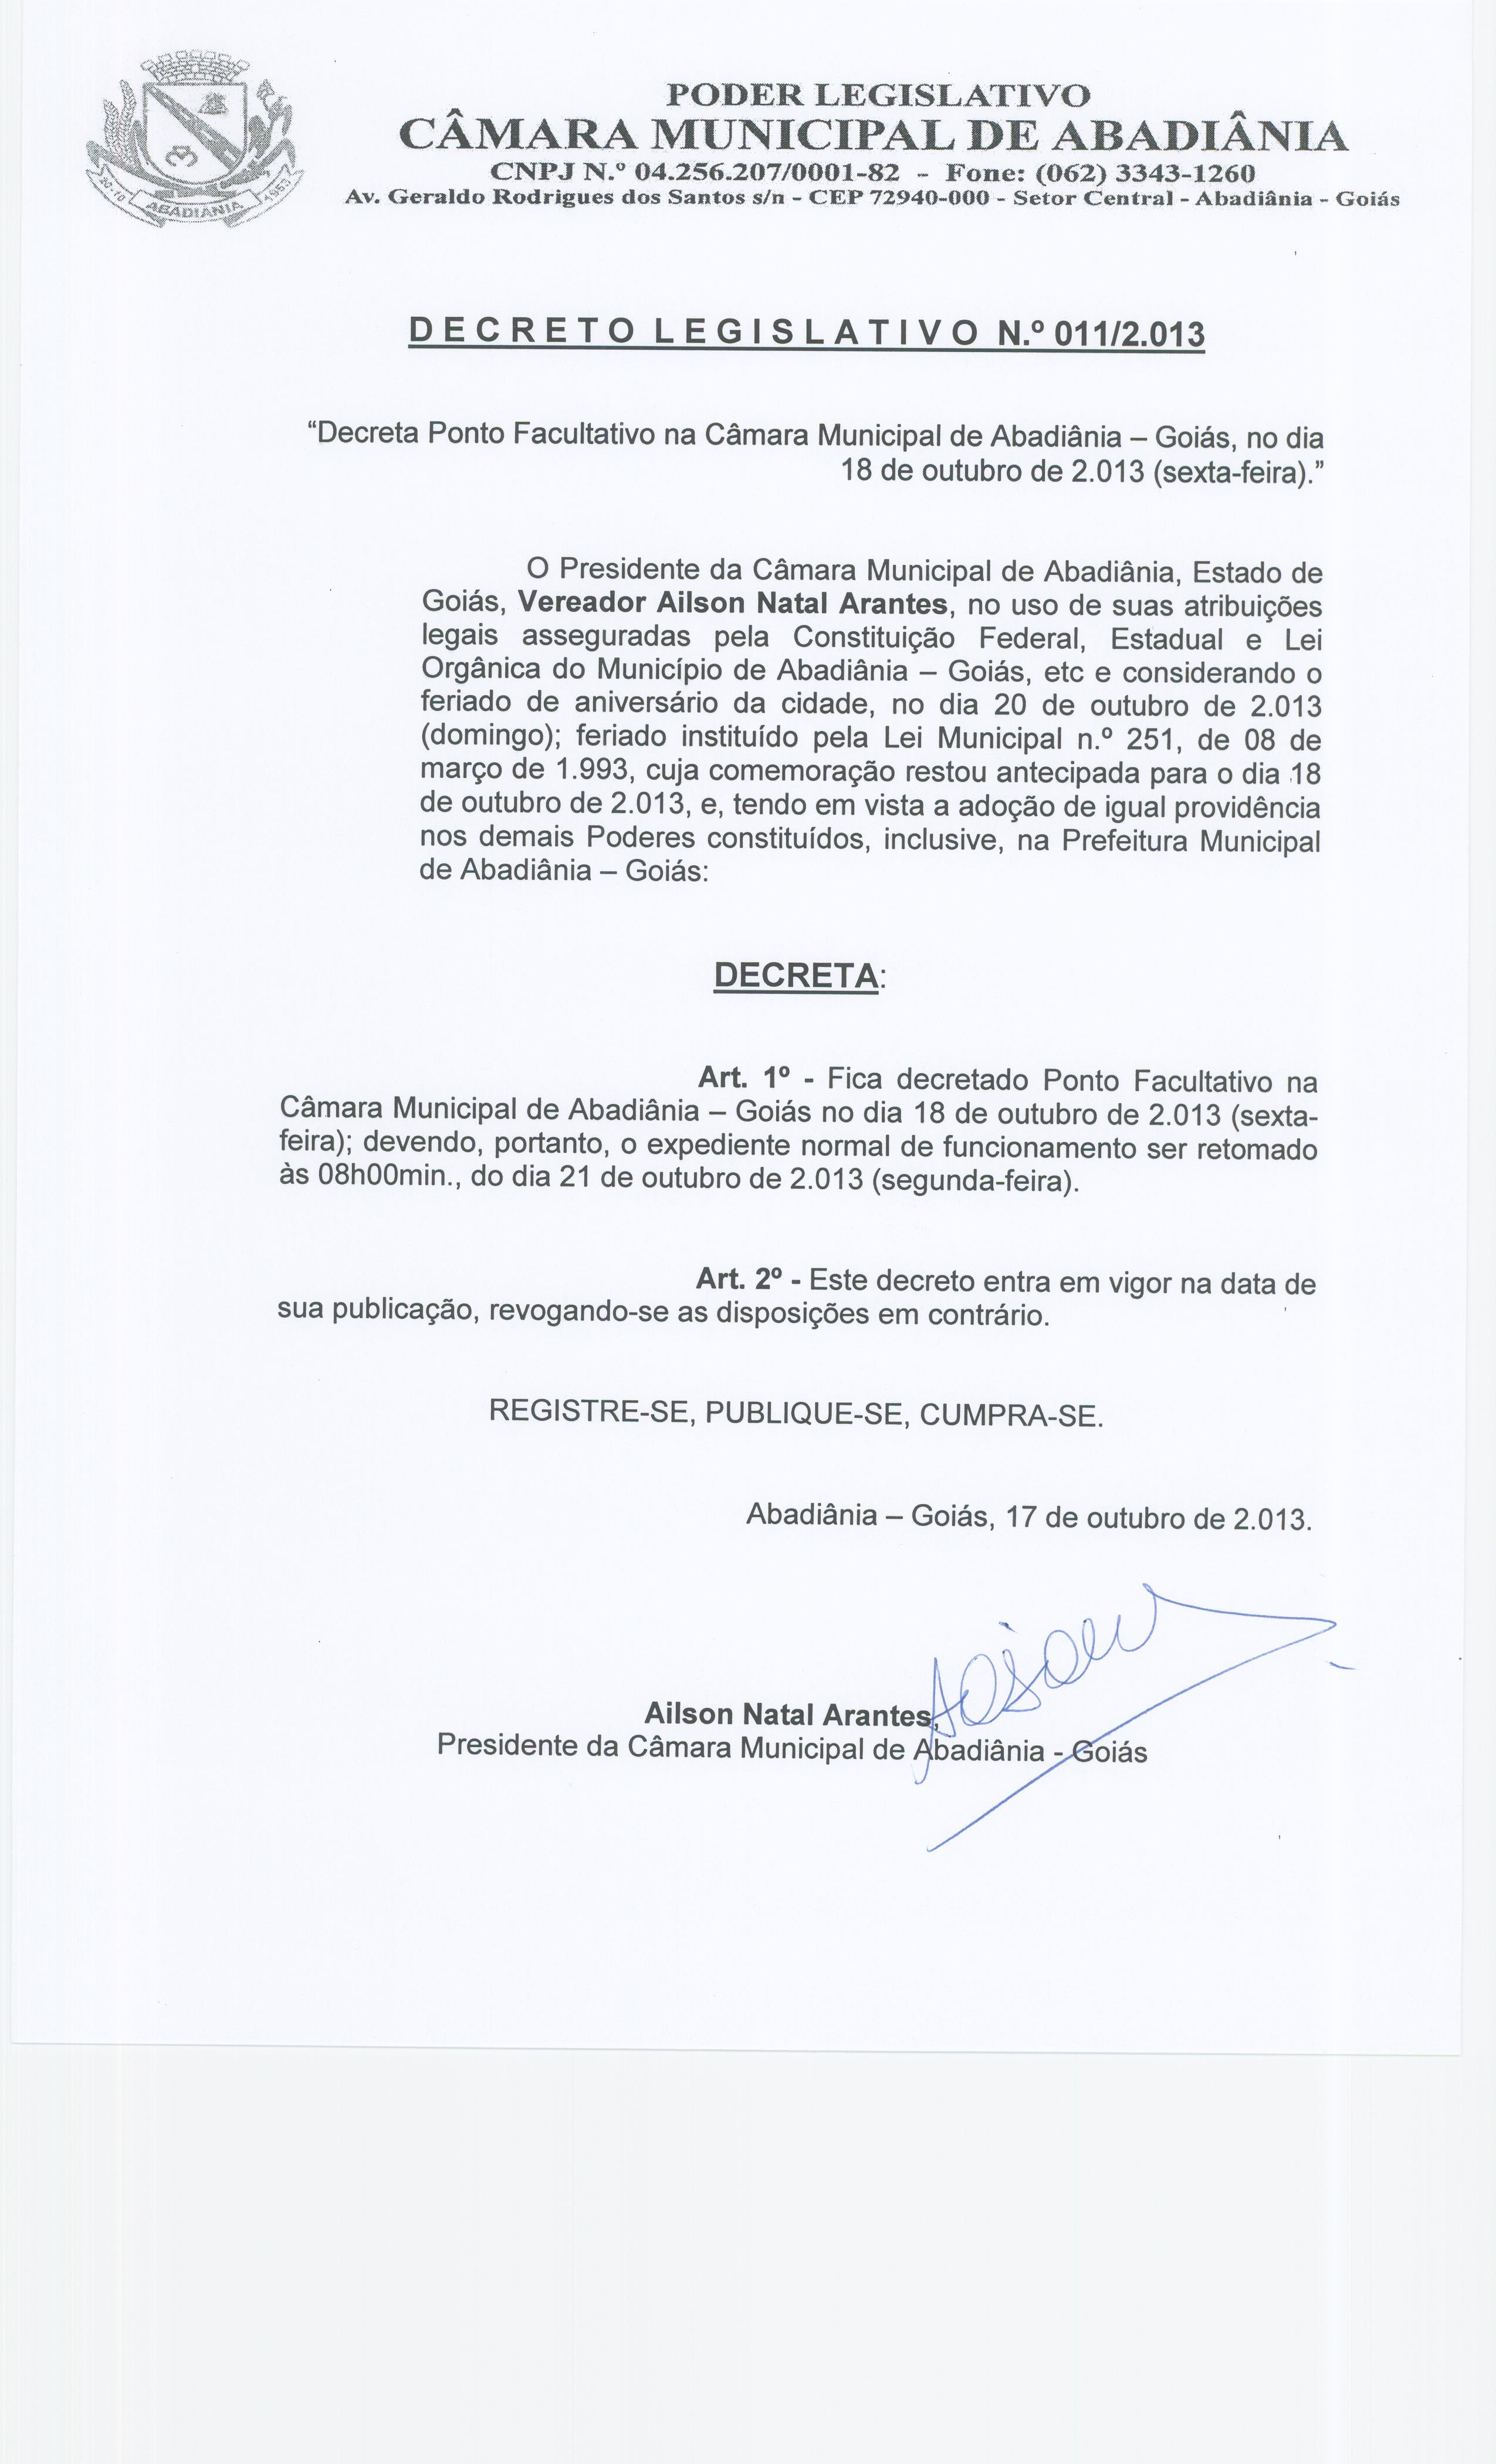 Decreto Legislativo n° 011-2013